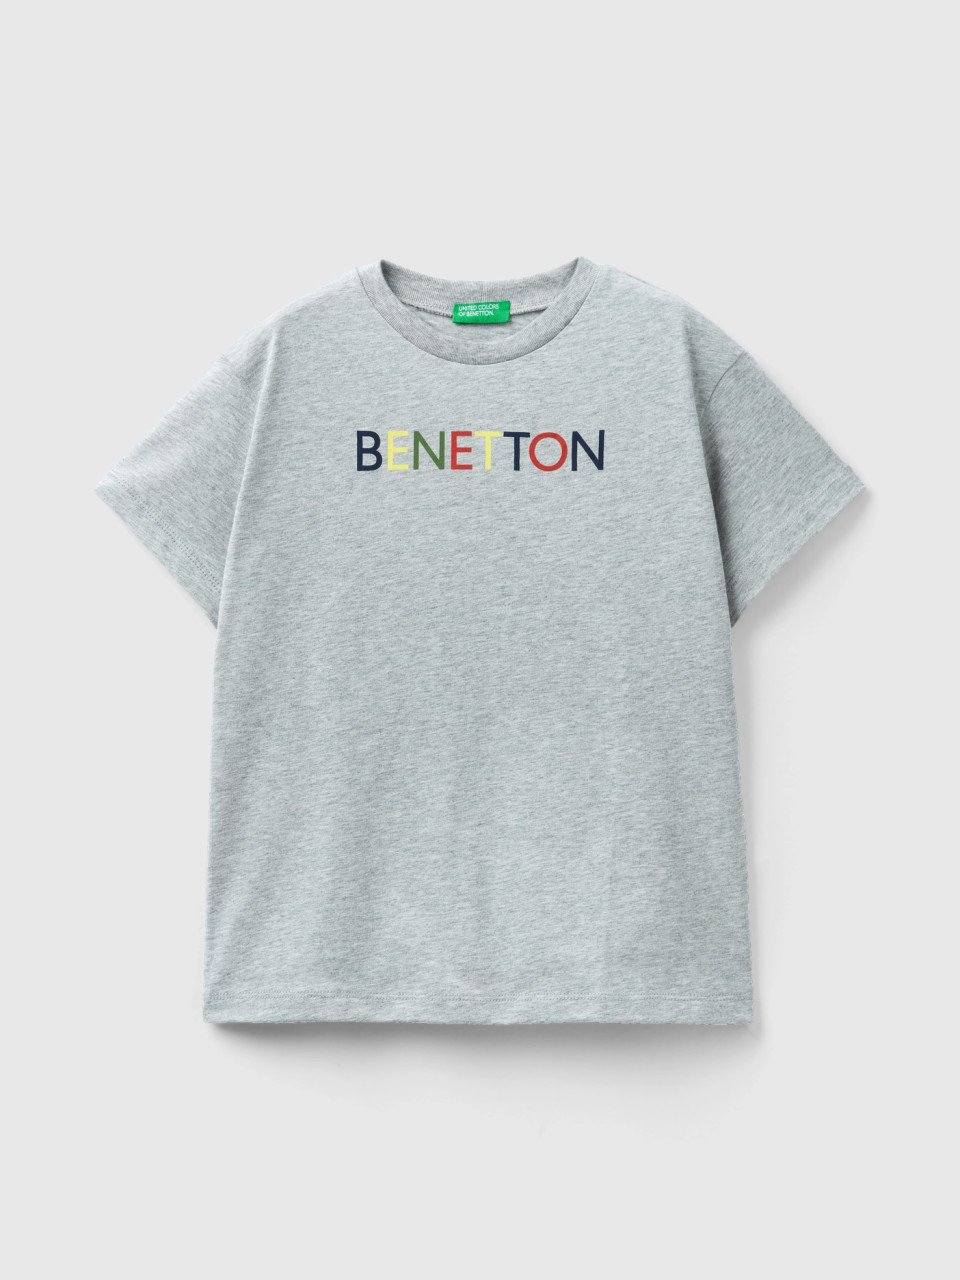 Benetton, 100% Organic Cotton T-shirt, Light Gray, Kids